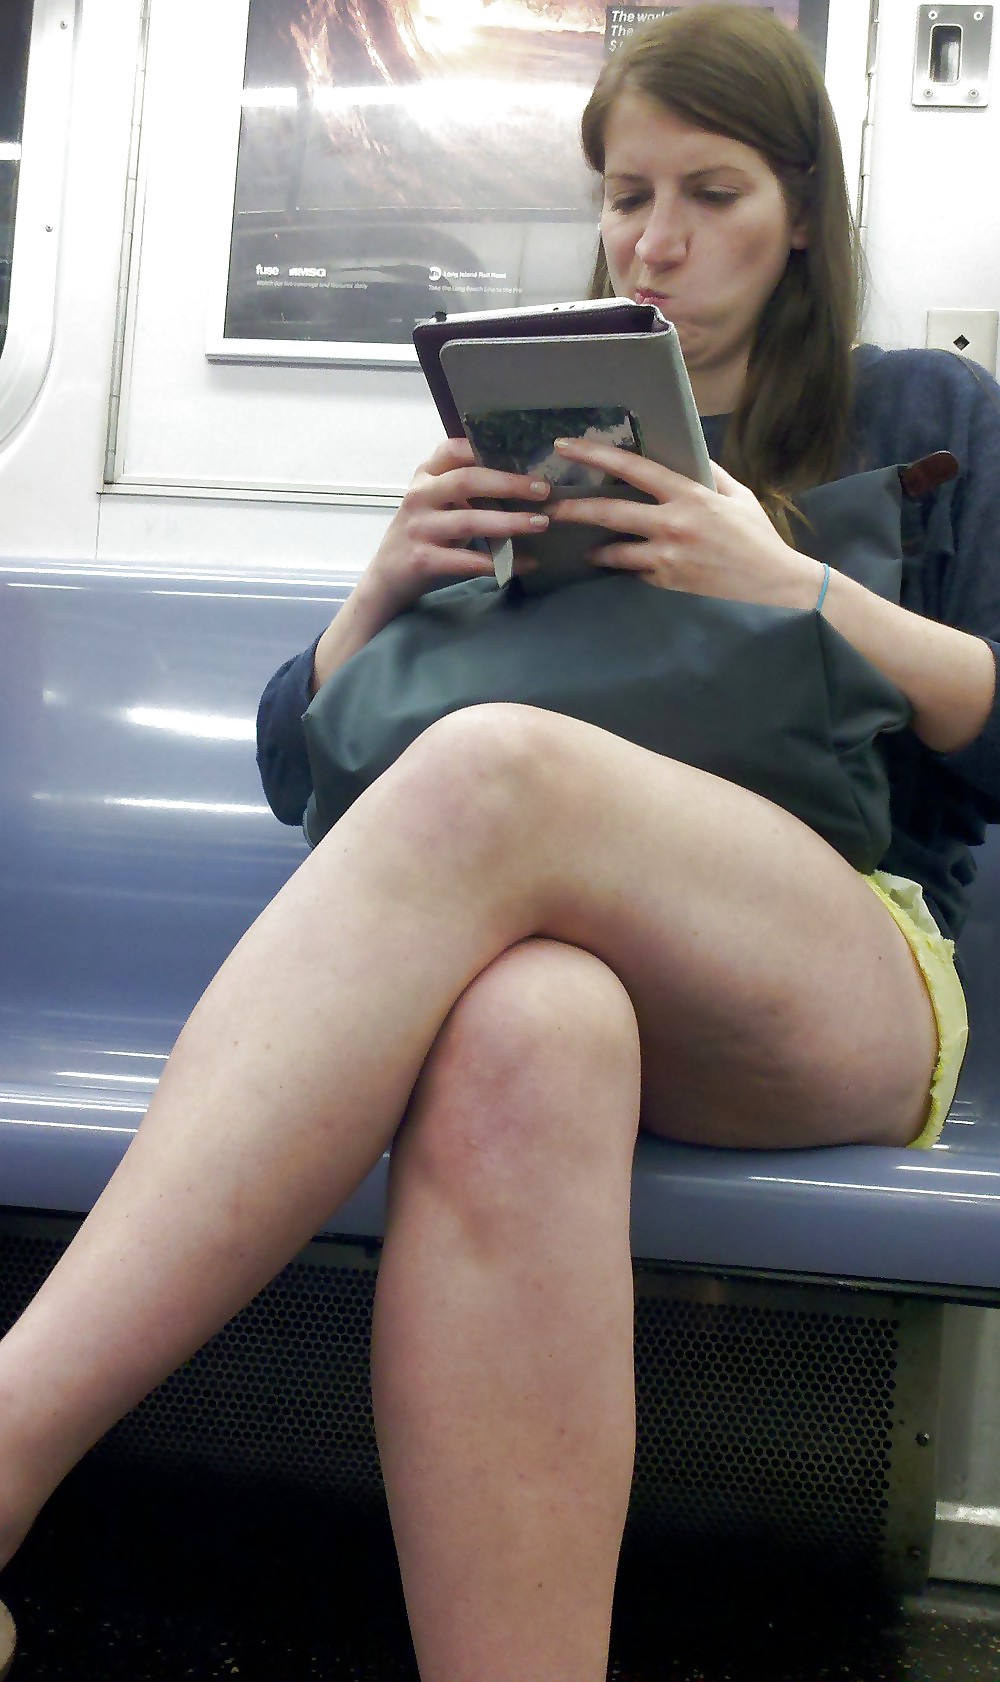 ニューヨークの地下鉄で働く女性の集大成1 - 脚と太もも
 #6590201